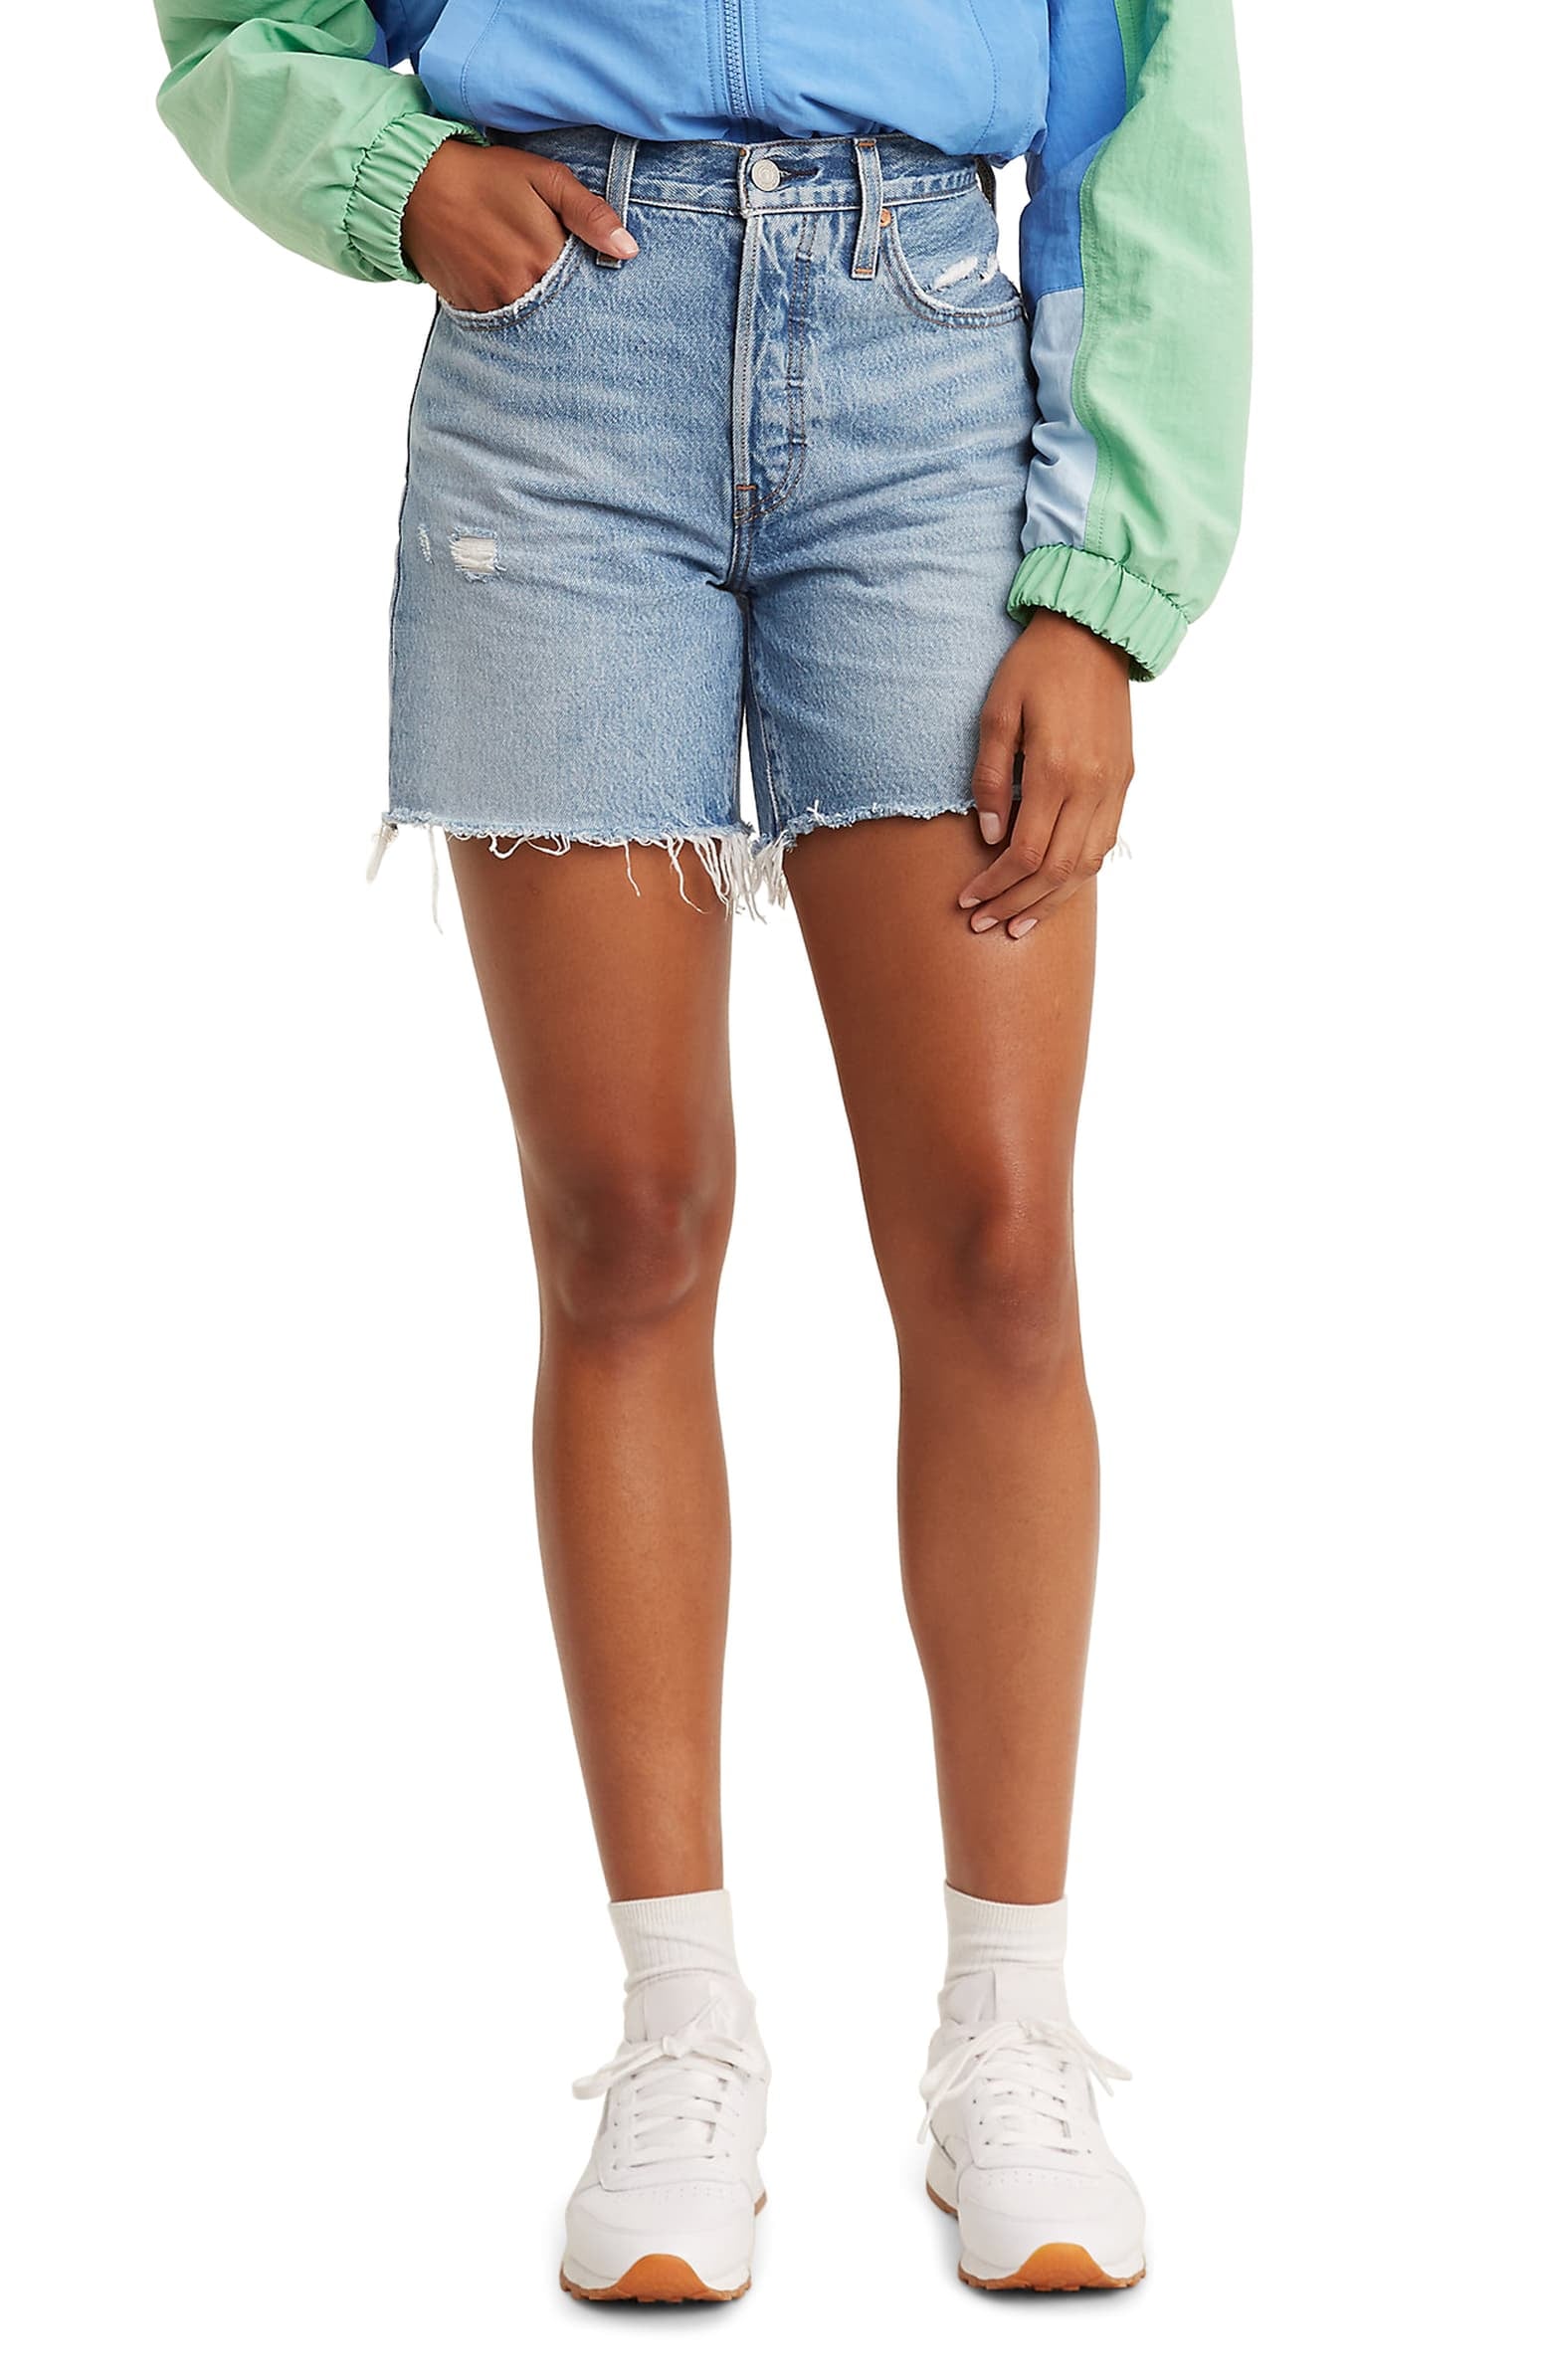 comfy jean shorts